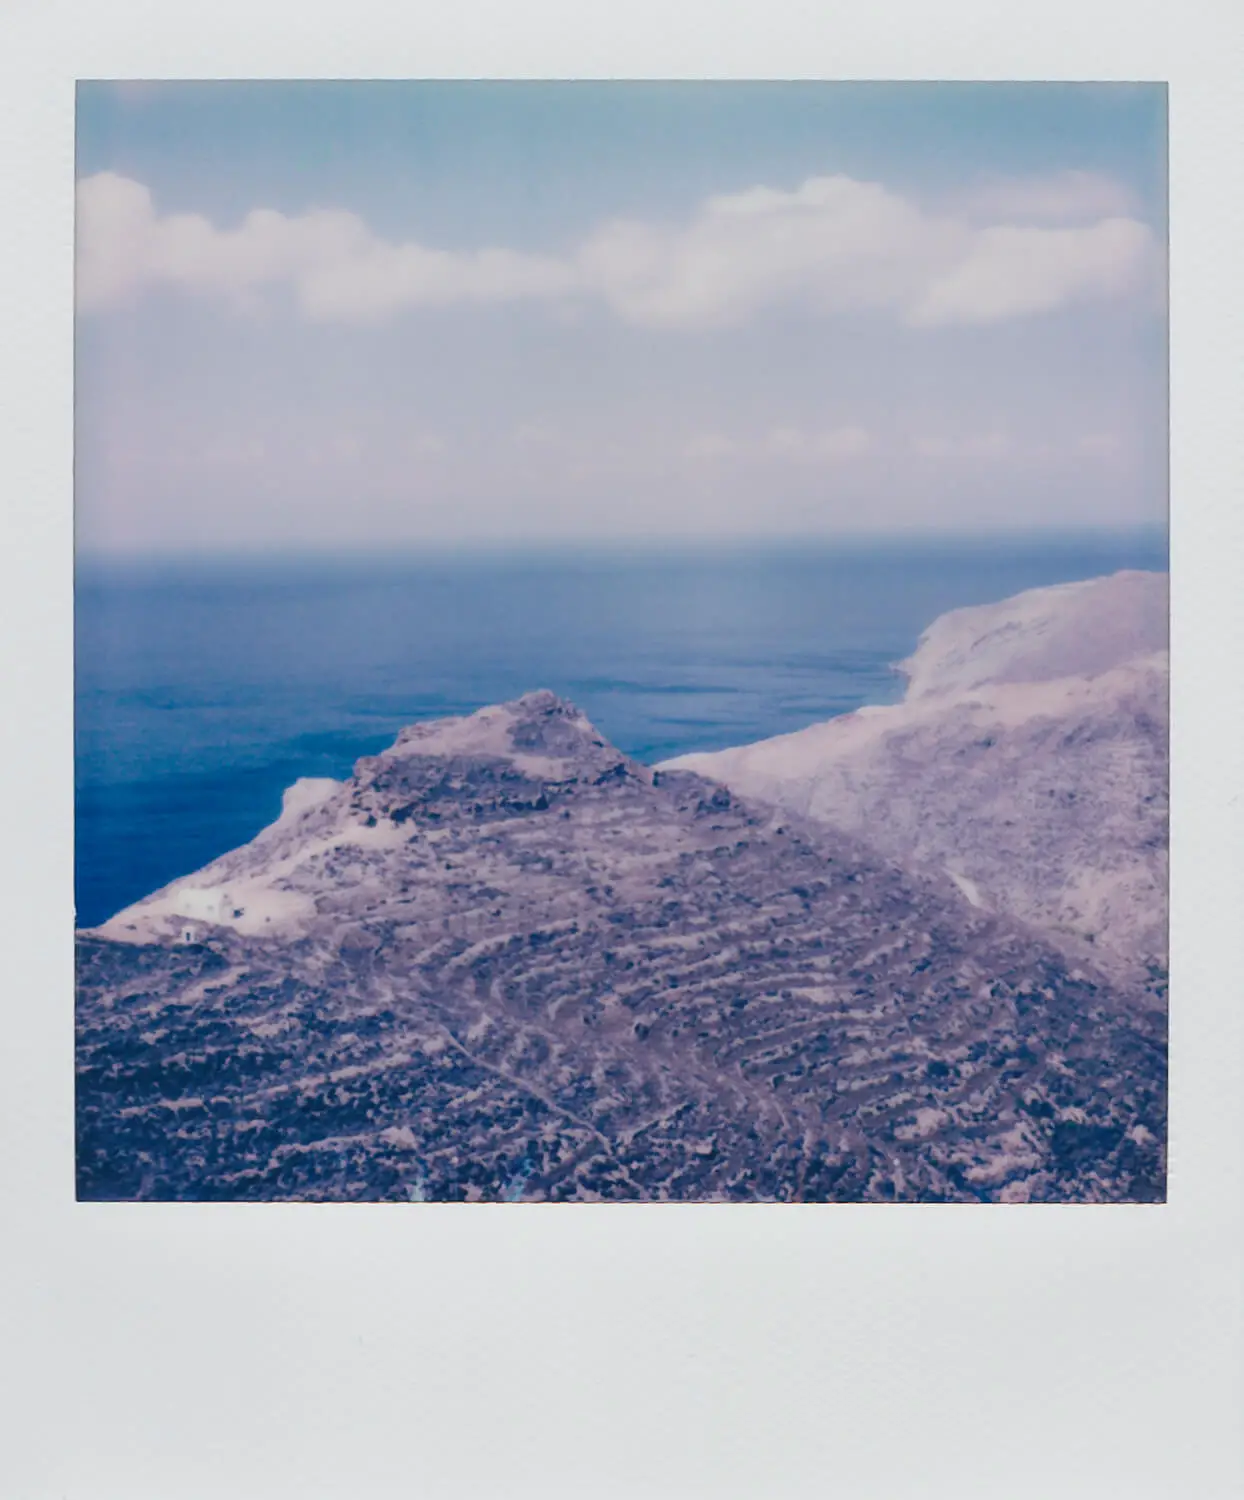 5 καρέ ... από μια Polaroid Color SX-70 στο μικρό ελληνικό νησί της Ανάφης (φακός ISO 160 / Polaroid SX-70 + 116mm f/8) – Του Γιώργου Παυλόπουλου